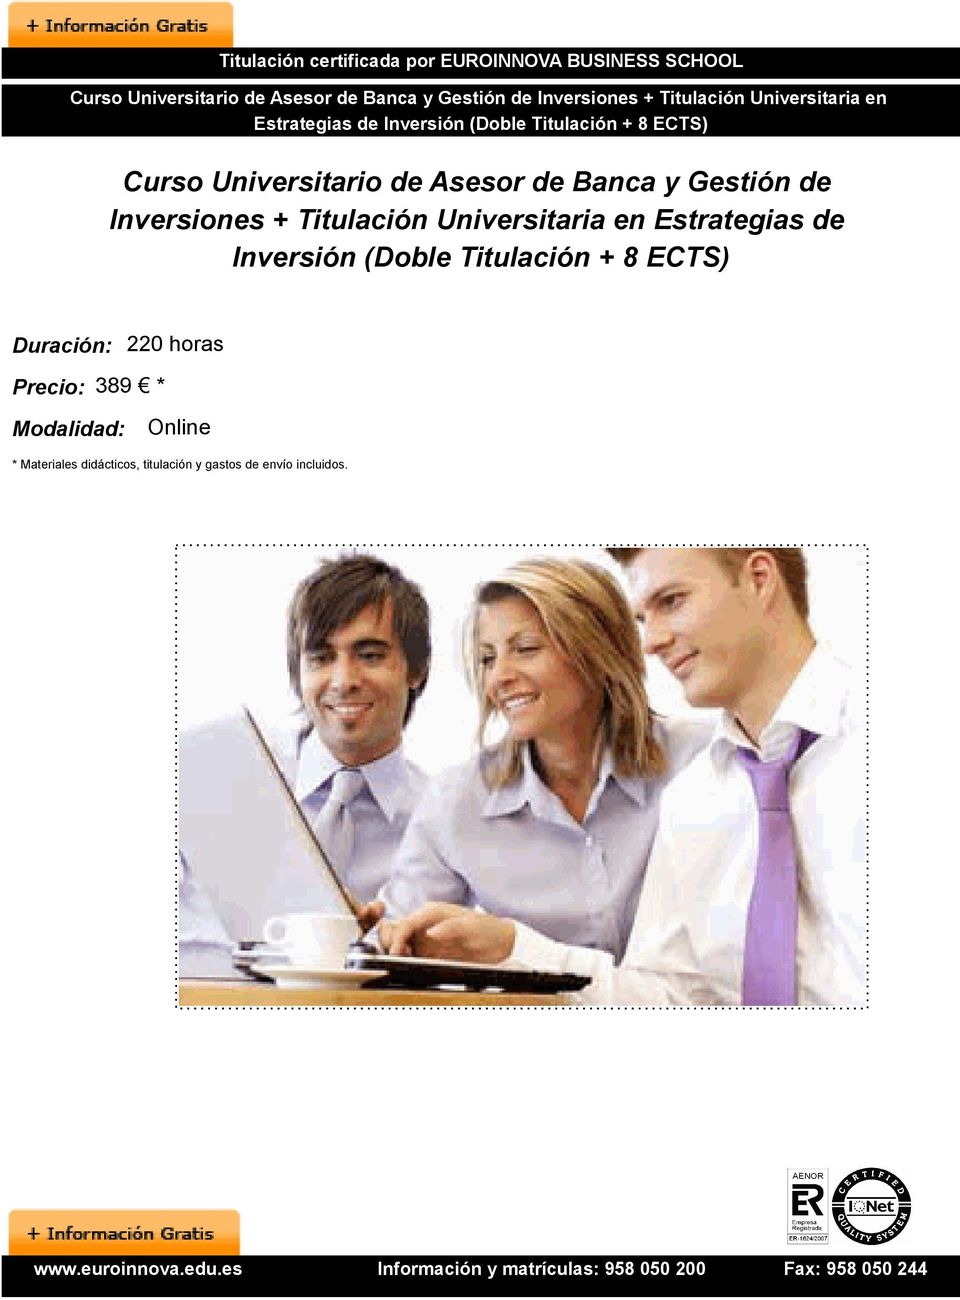 Inversiones + Titulación Universitaria en Estrategias de Inversión (Doble Titulación + 8 ECTS)